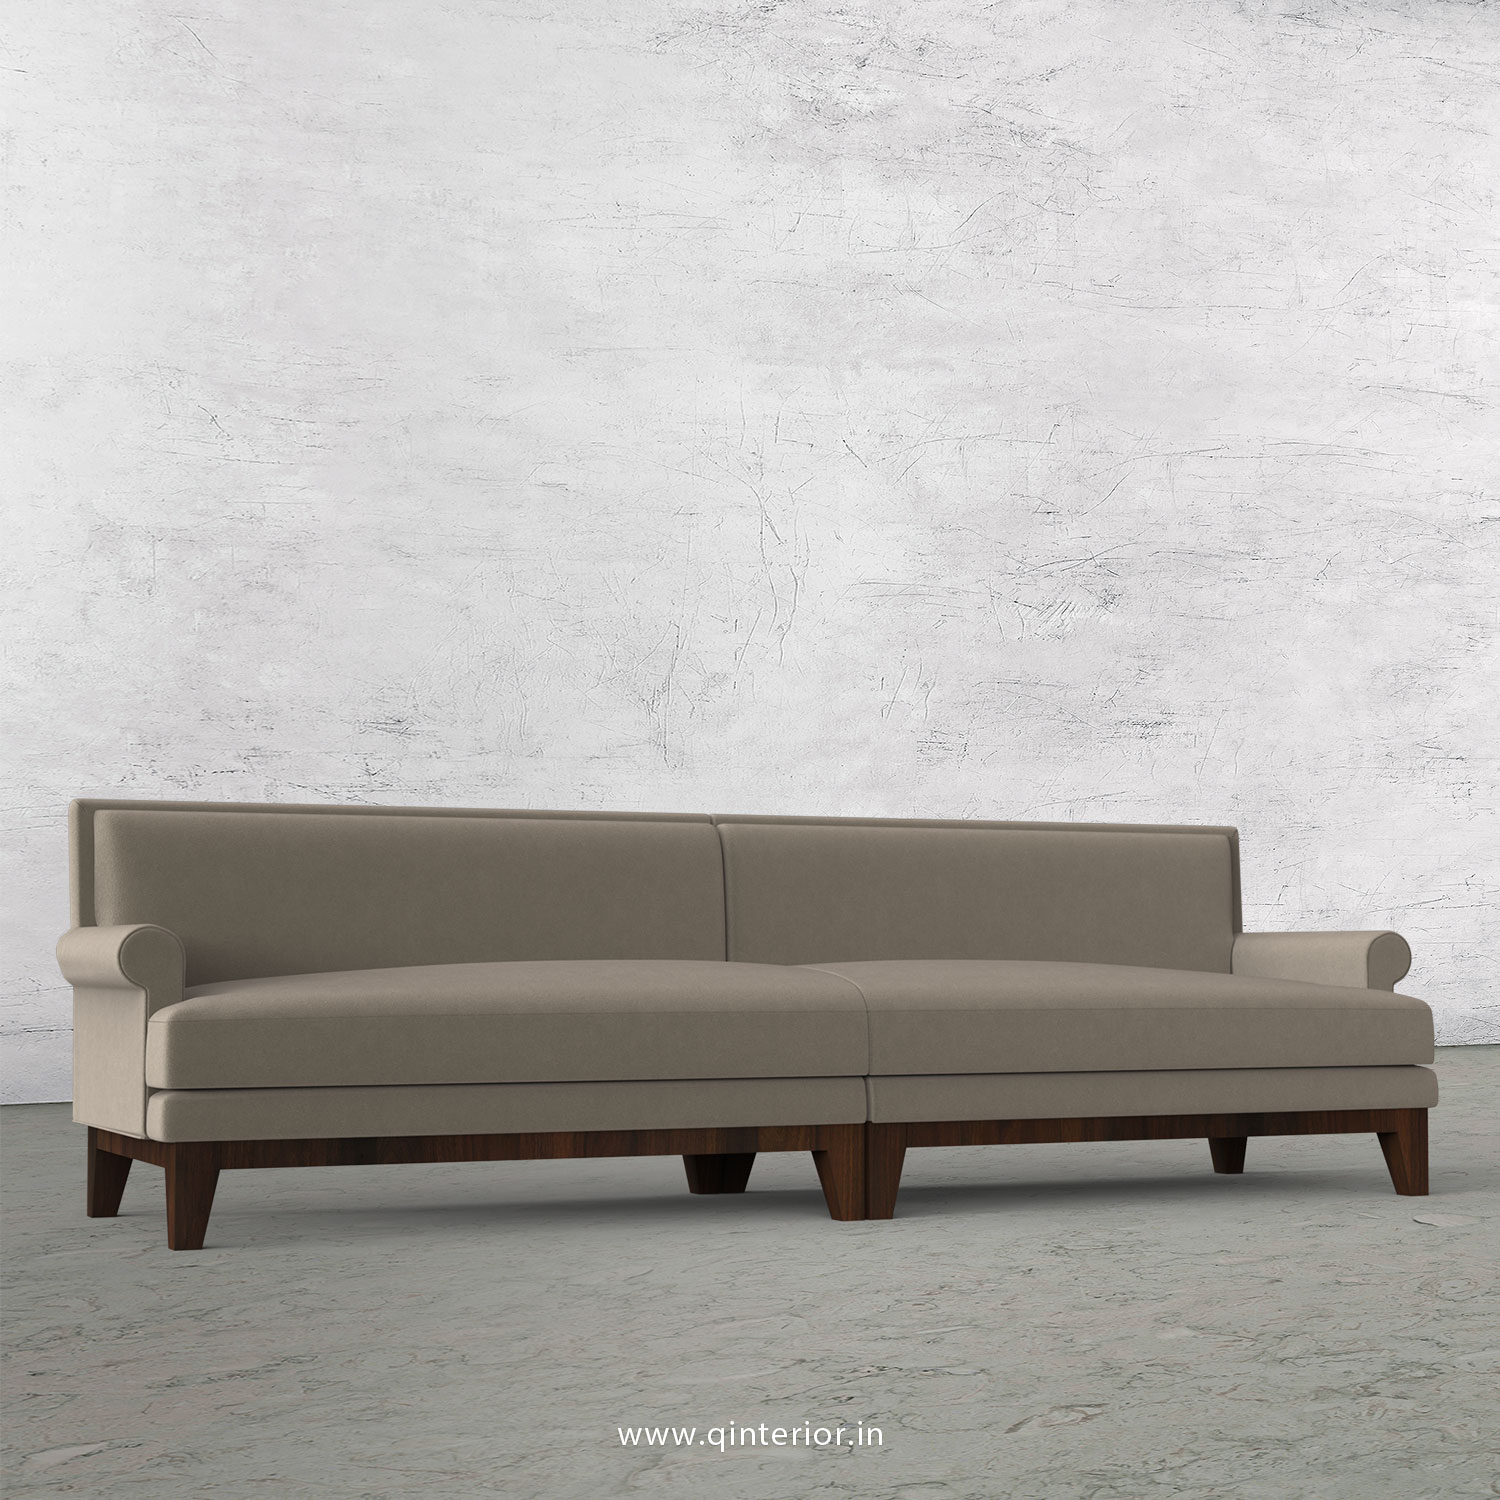 Aviana 4 Seater Sofa in Velvet Fabric - SFA001 VL12